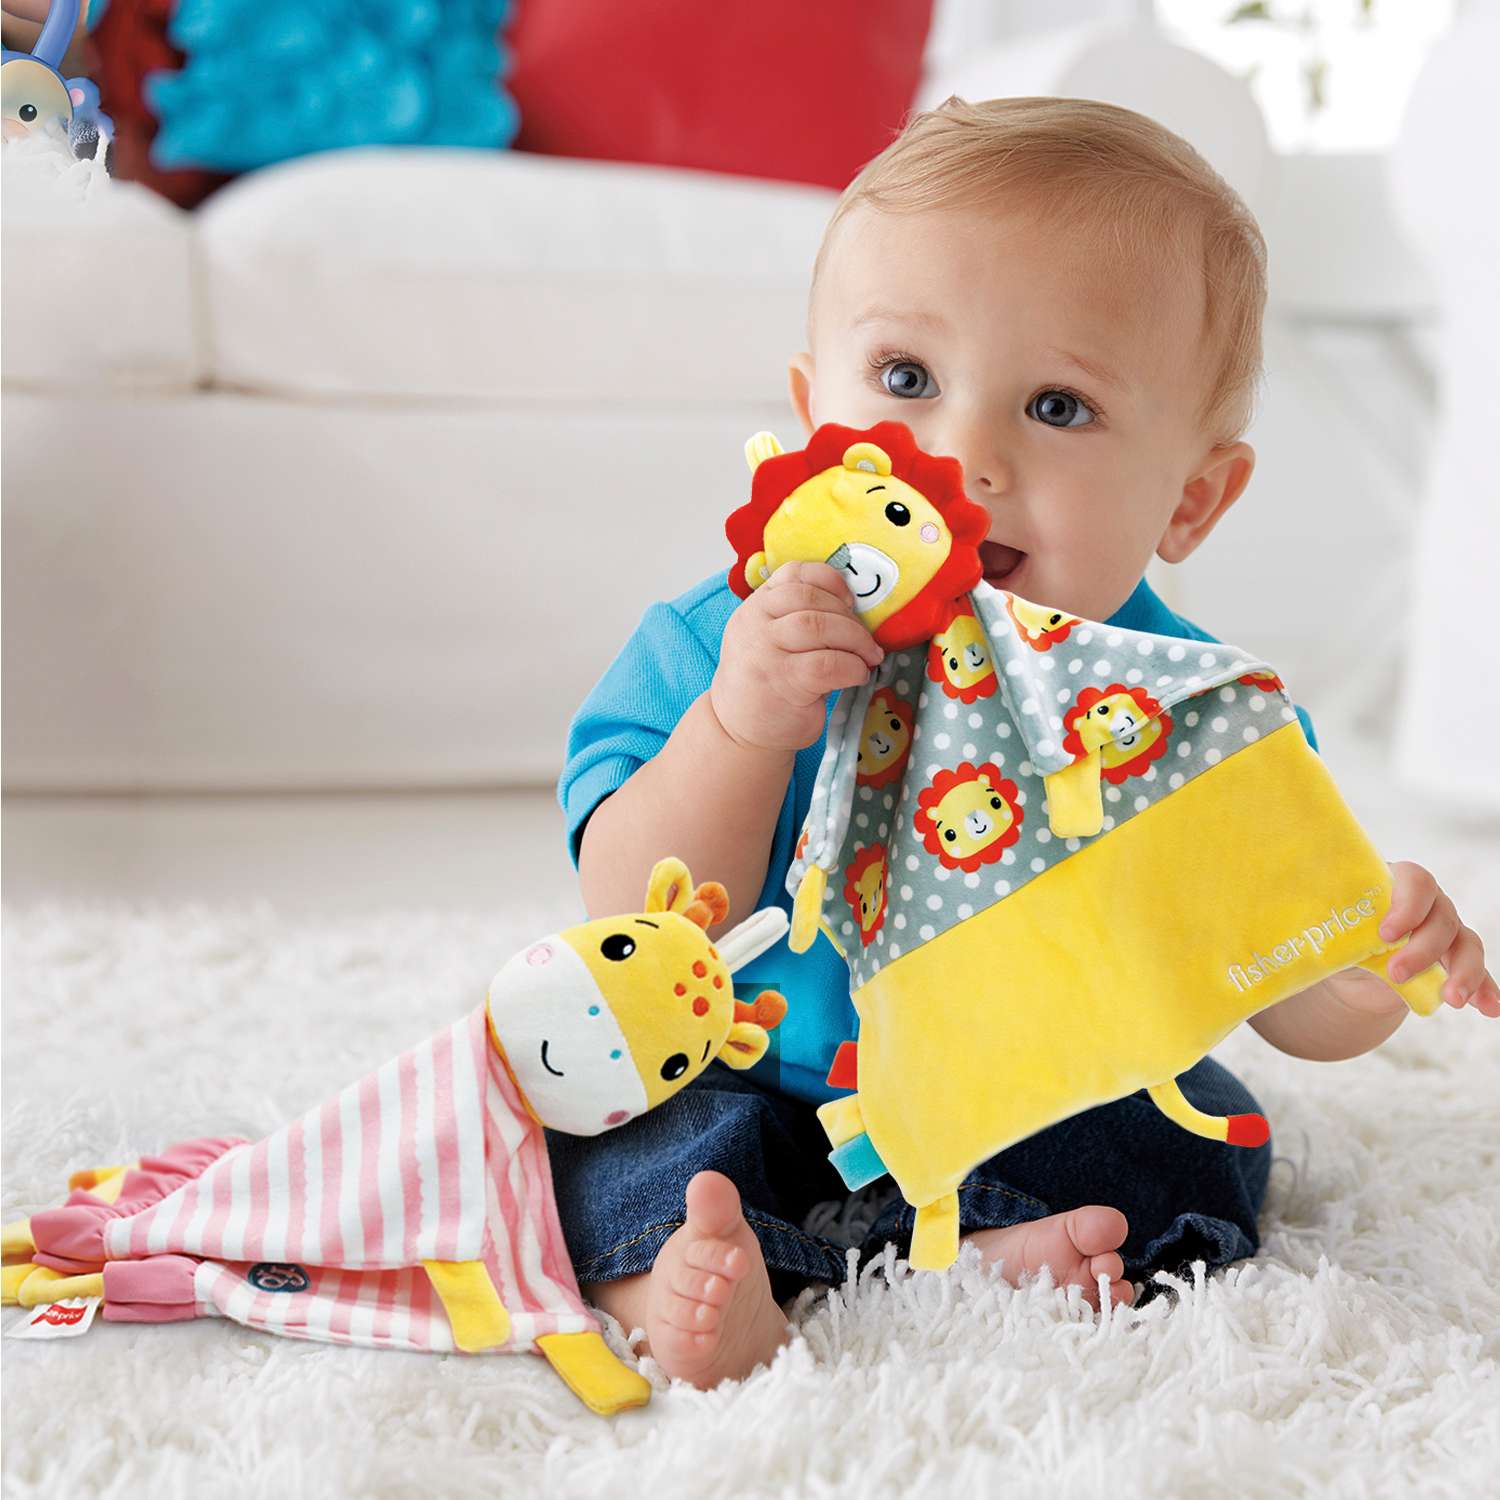 Комфортер плюшевый Fisher Price Жирафик развивающая мягкая игрушка для детей 0+ - фото 4